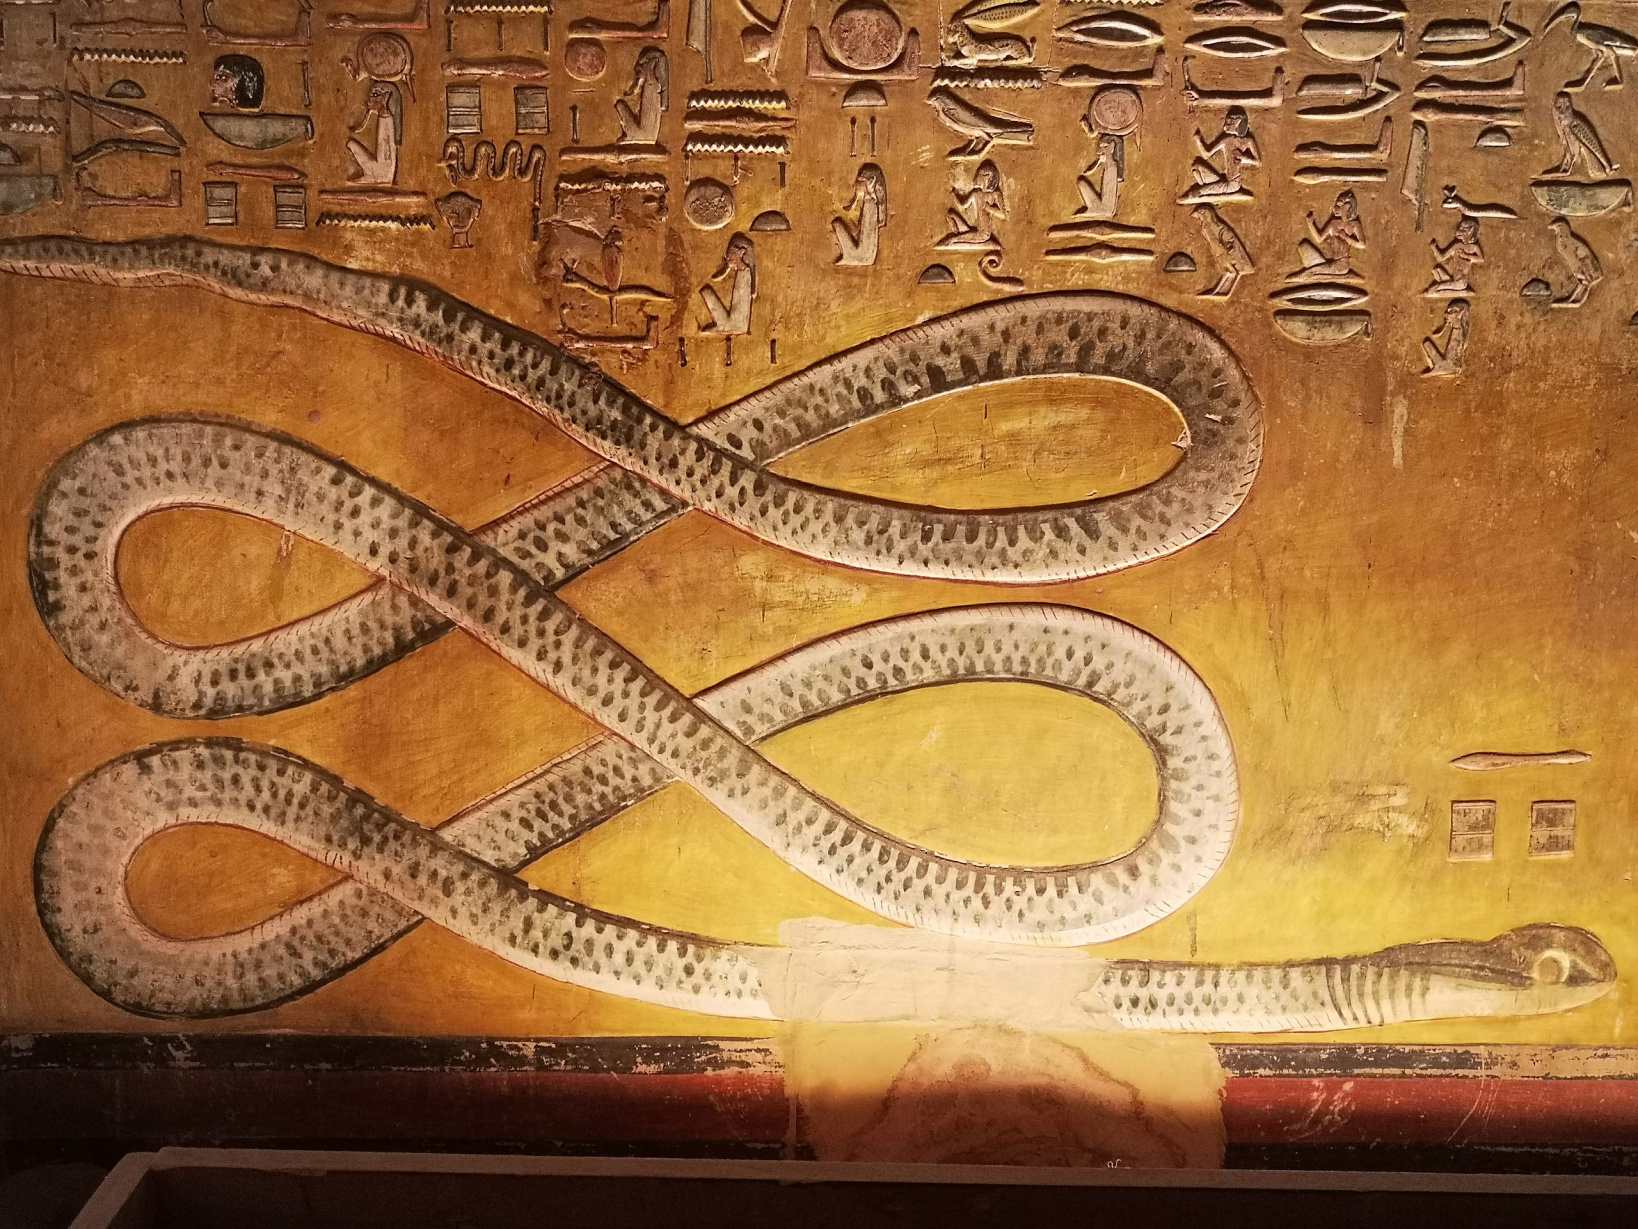 Arte egípcia antiga representando Apep